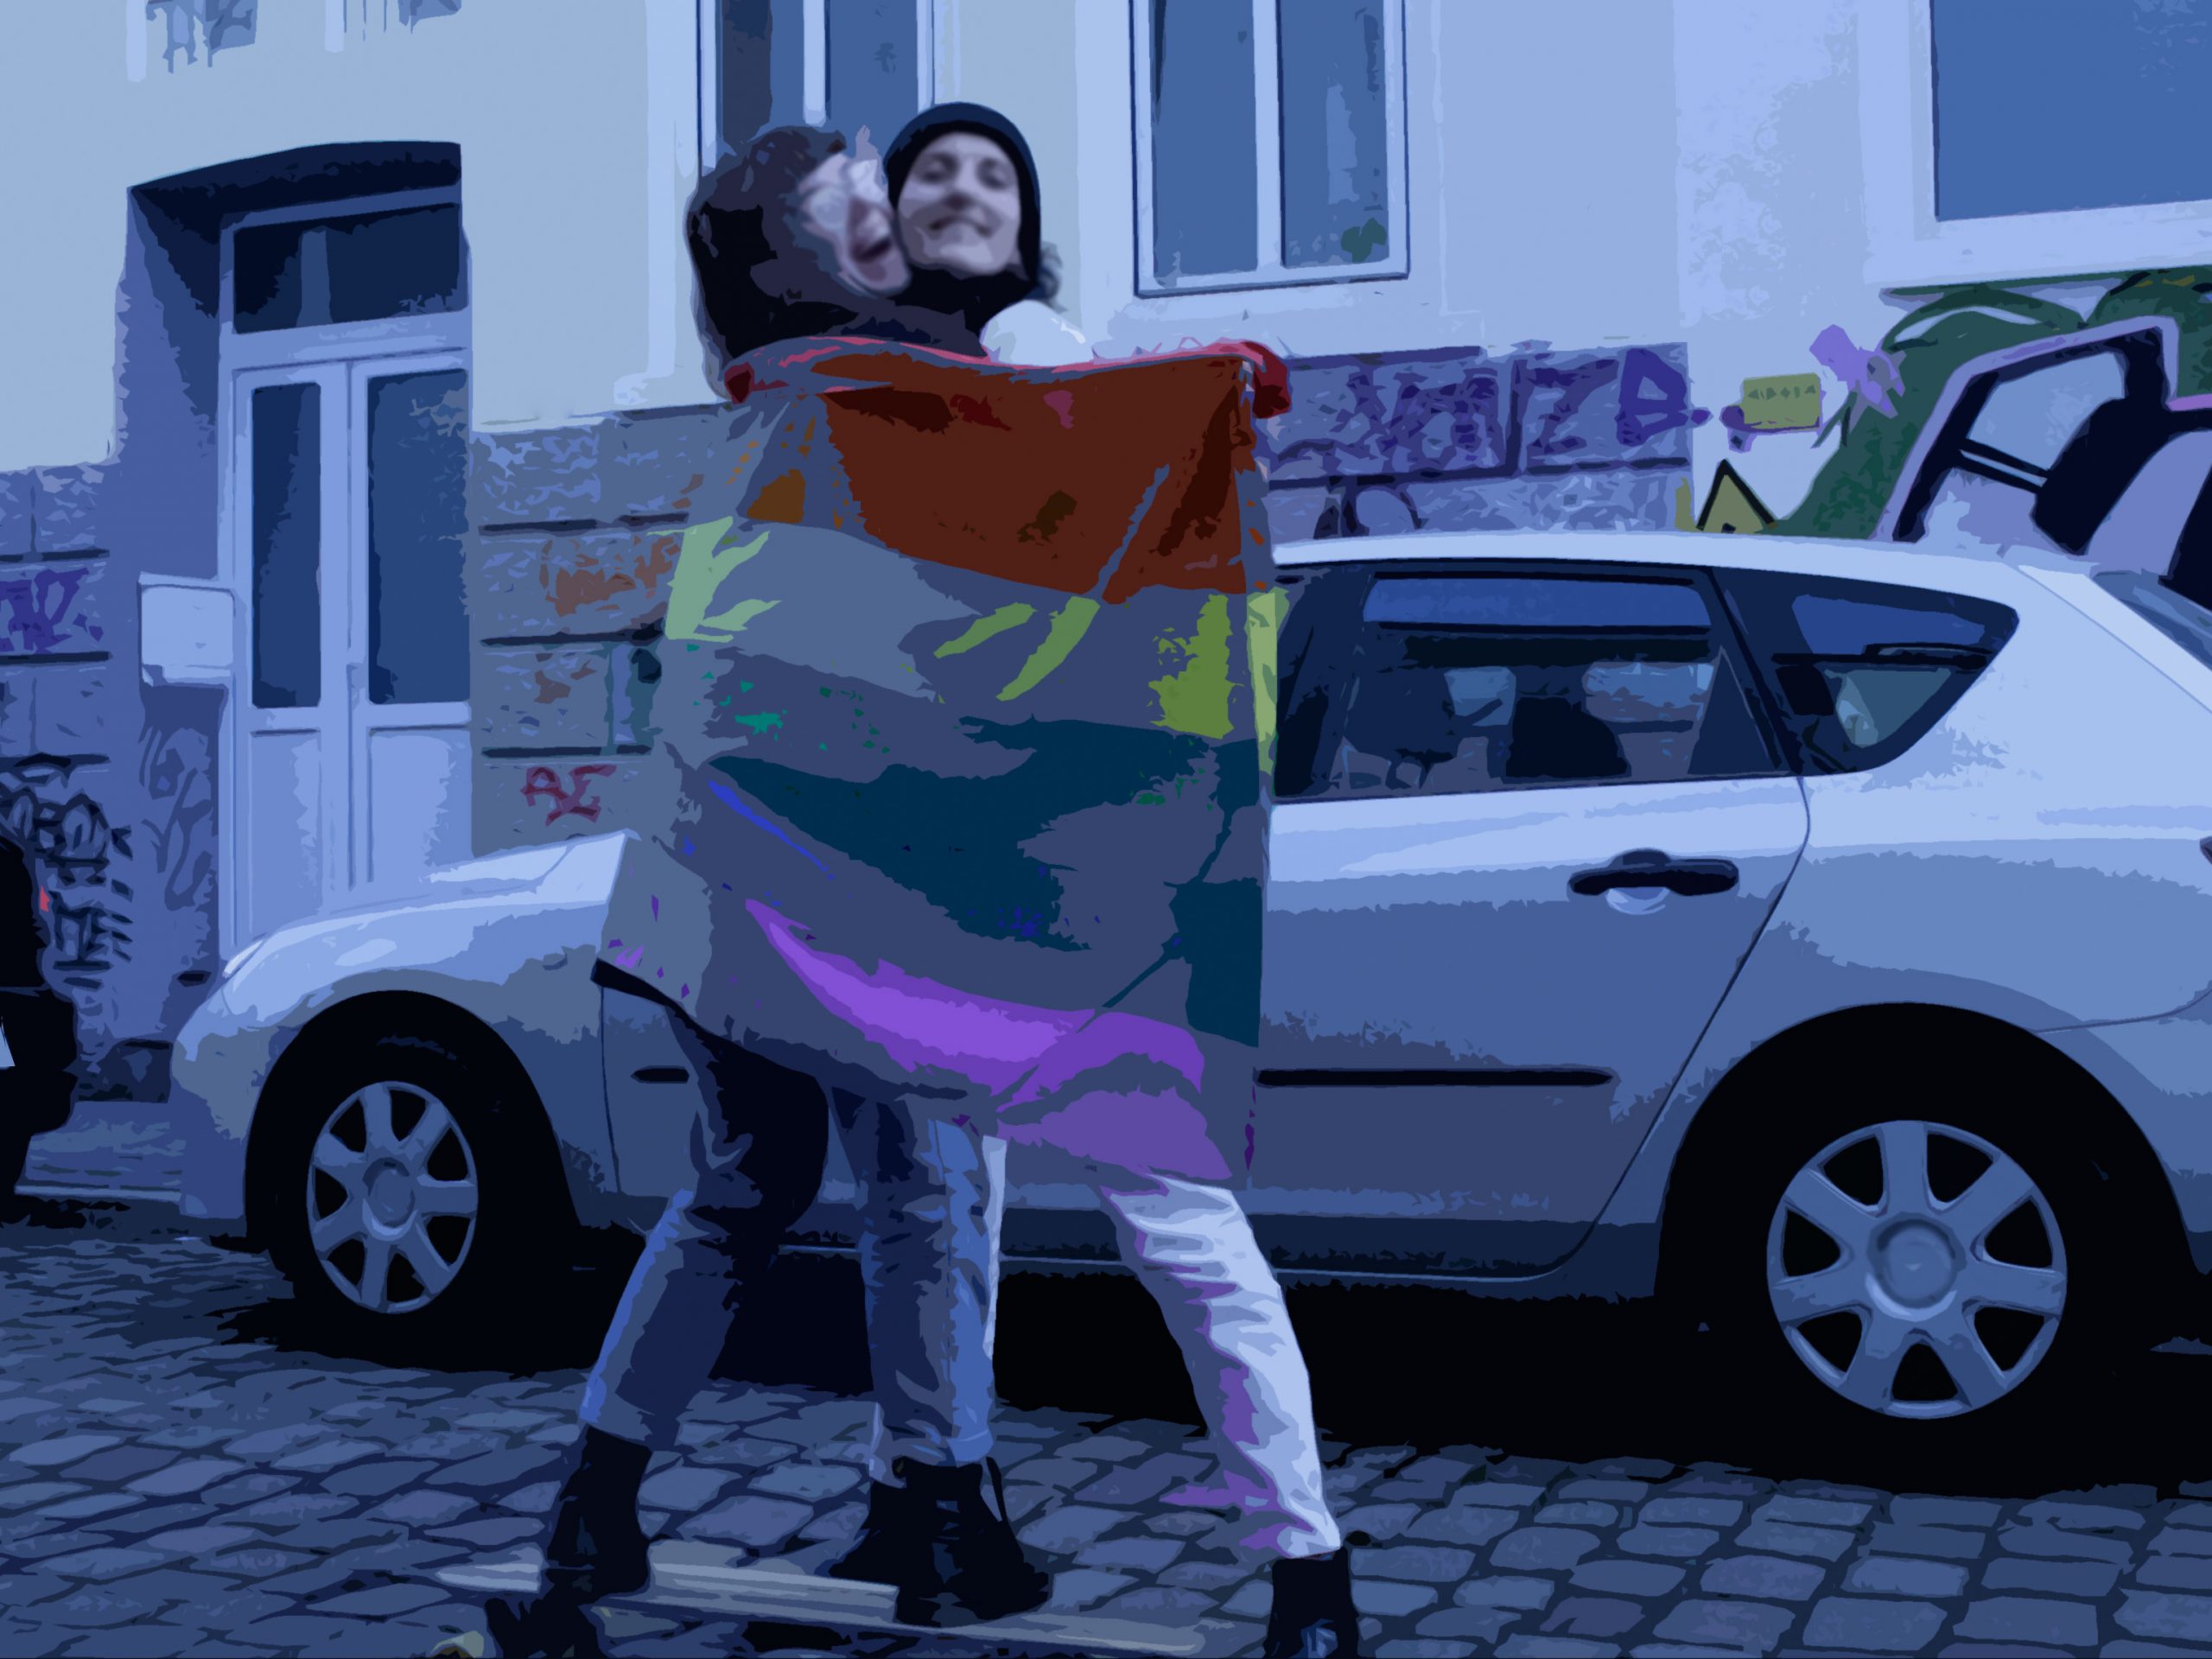 Auf der Straße. Zwei Personen umarmen sich, die hintere, größere hält eine GayPride-Flagge um beide. Die vordere, kleinere steht auf einem Longboard, sodass beide gleich groß sind. Beide lachen.